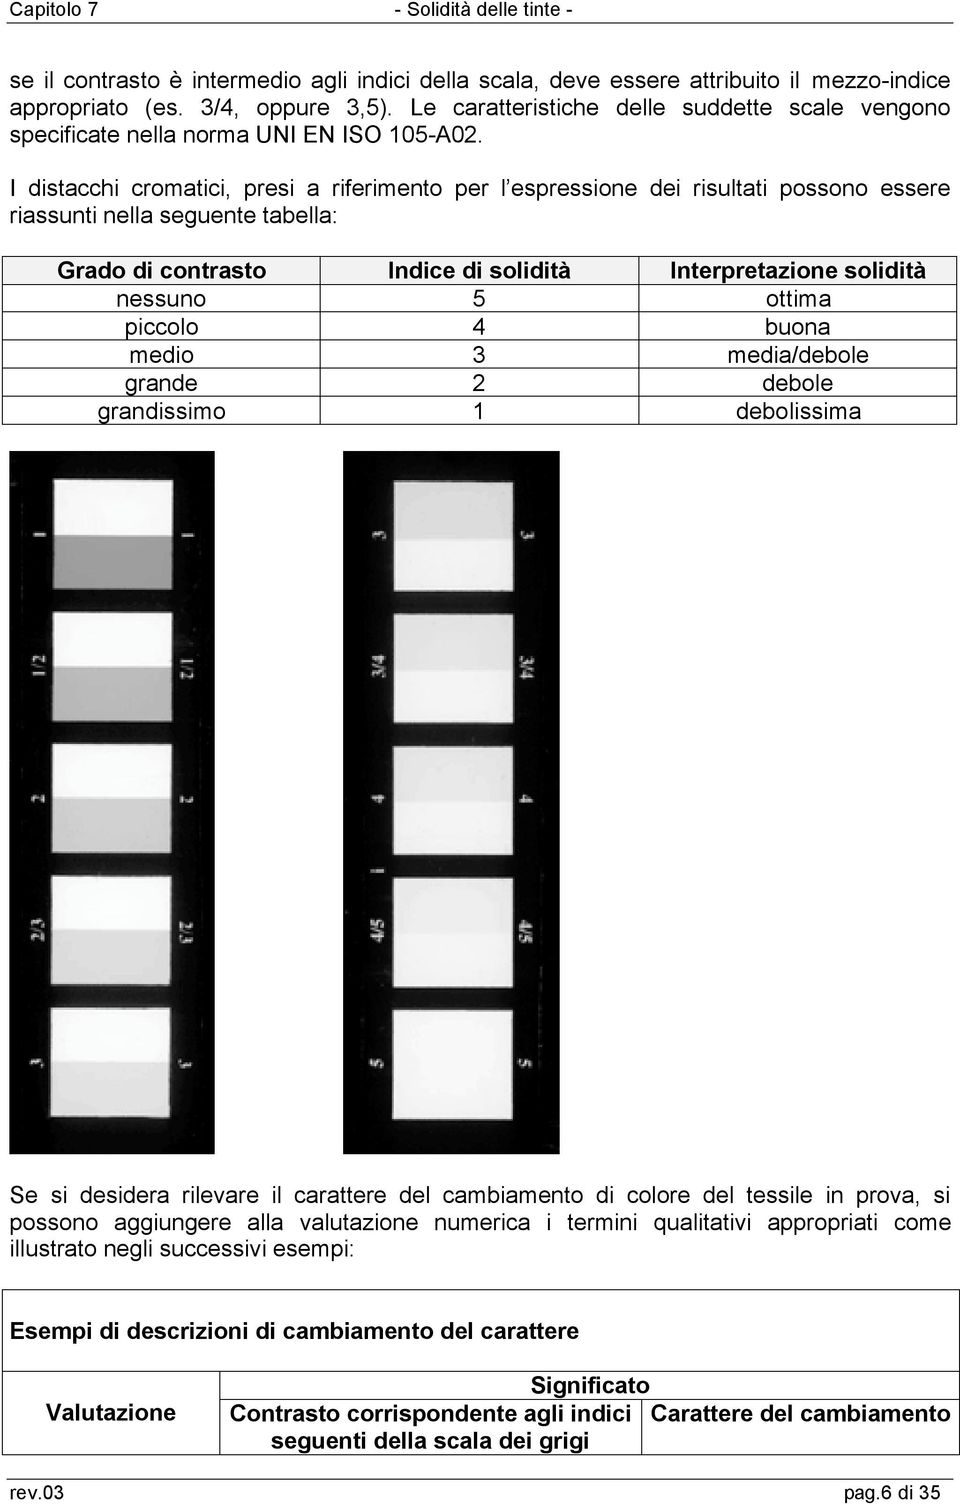 I distacchi cromatici, presi a riferimento per l espressione dei risultati possono essere riassunti nella seguente tabella: Grado di contrasto Indice di solidità Interpretazione solidità nessuno 5